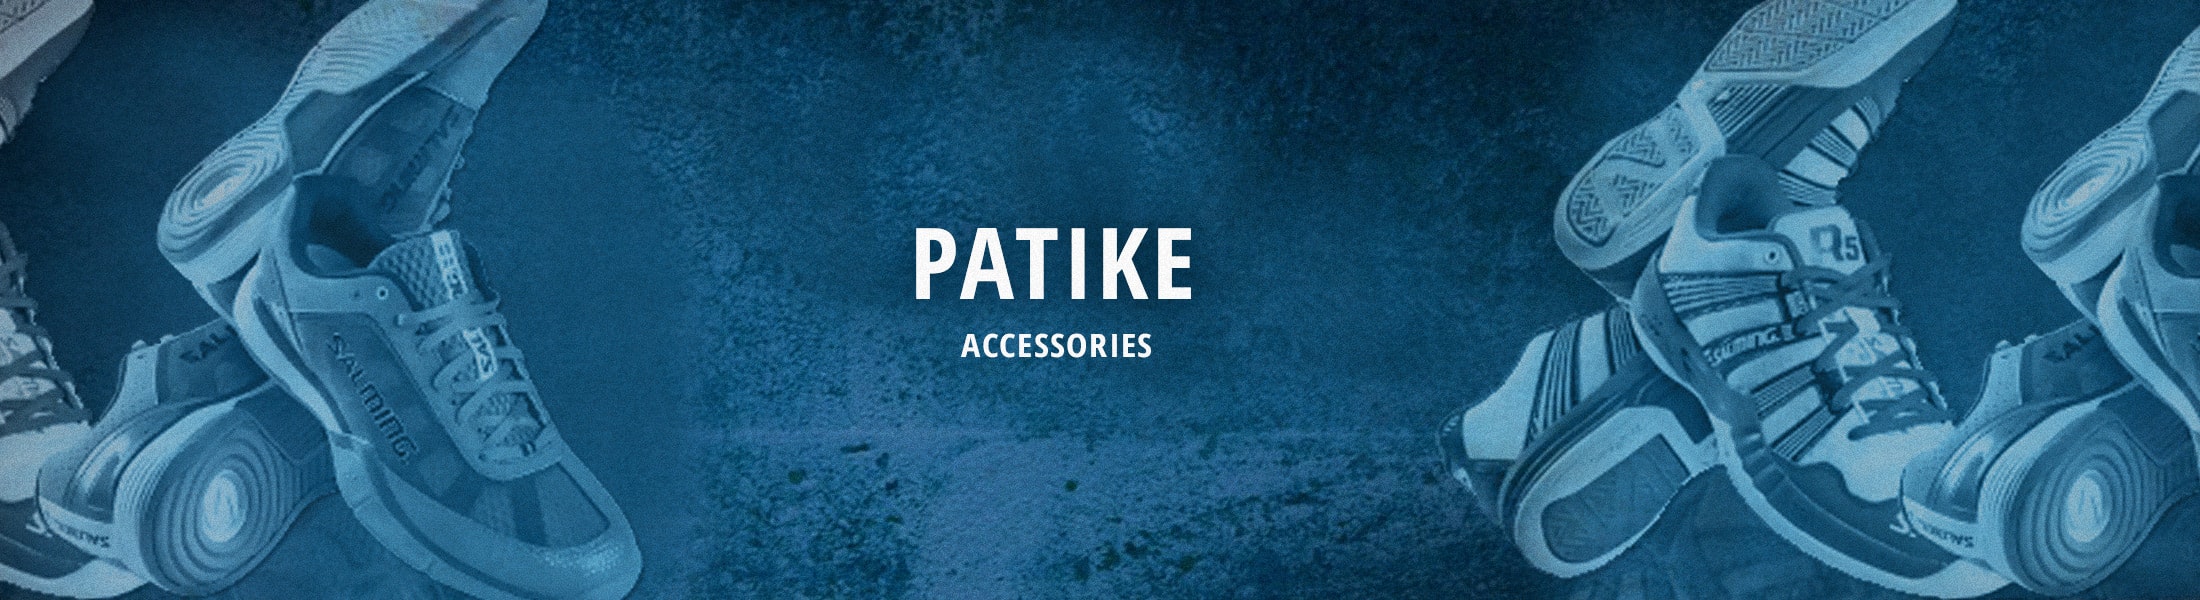 Accessories - Patike